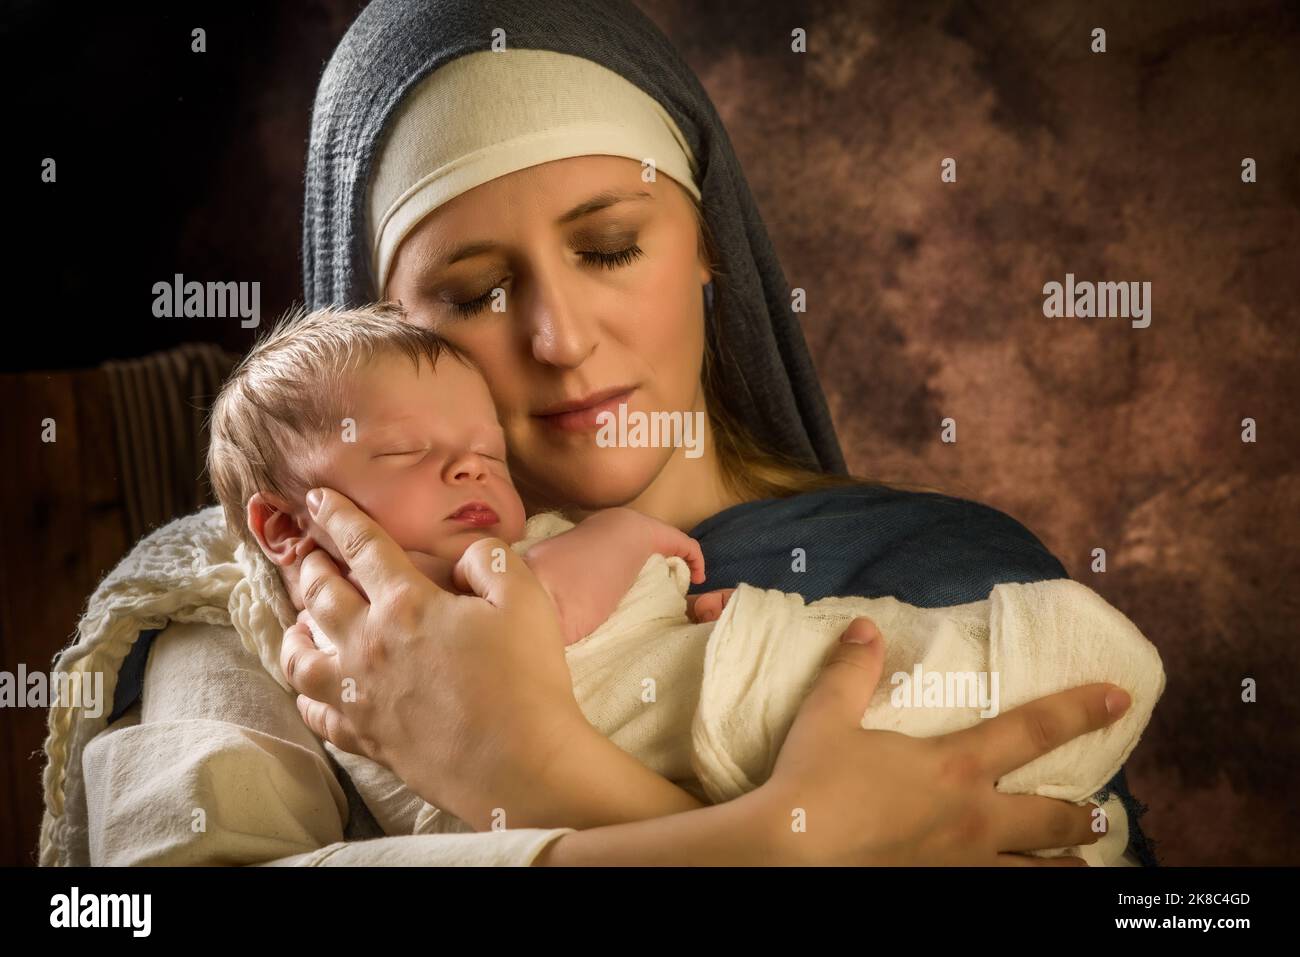 Reconstitution en direct scène de la nativité de Noël de la vraie mère d'un bébé de 8 jours jouant la Vierge Marie et le bébé Jésus Banque D'Images